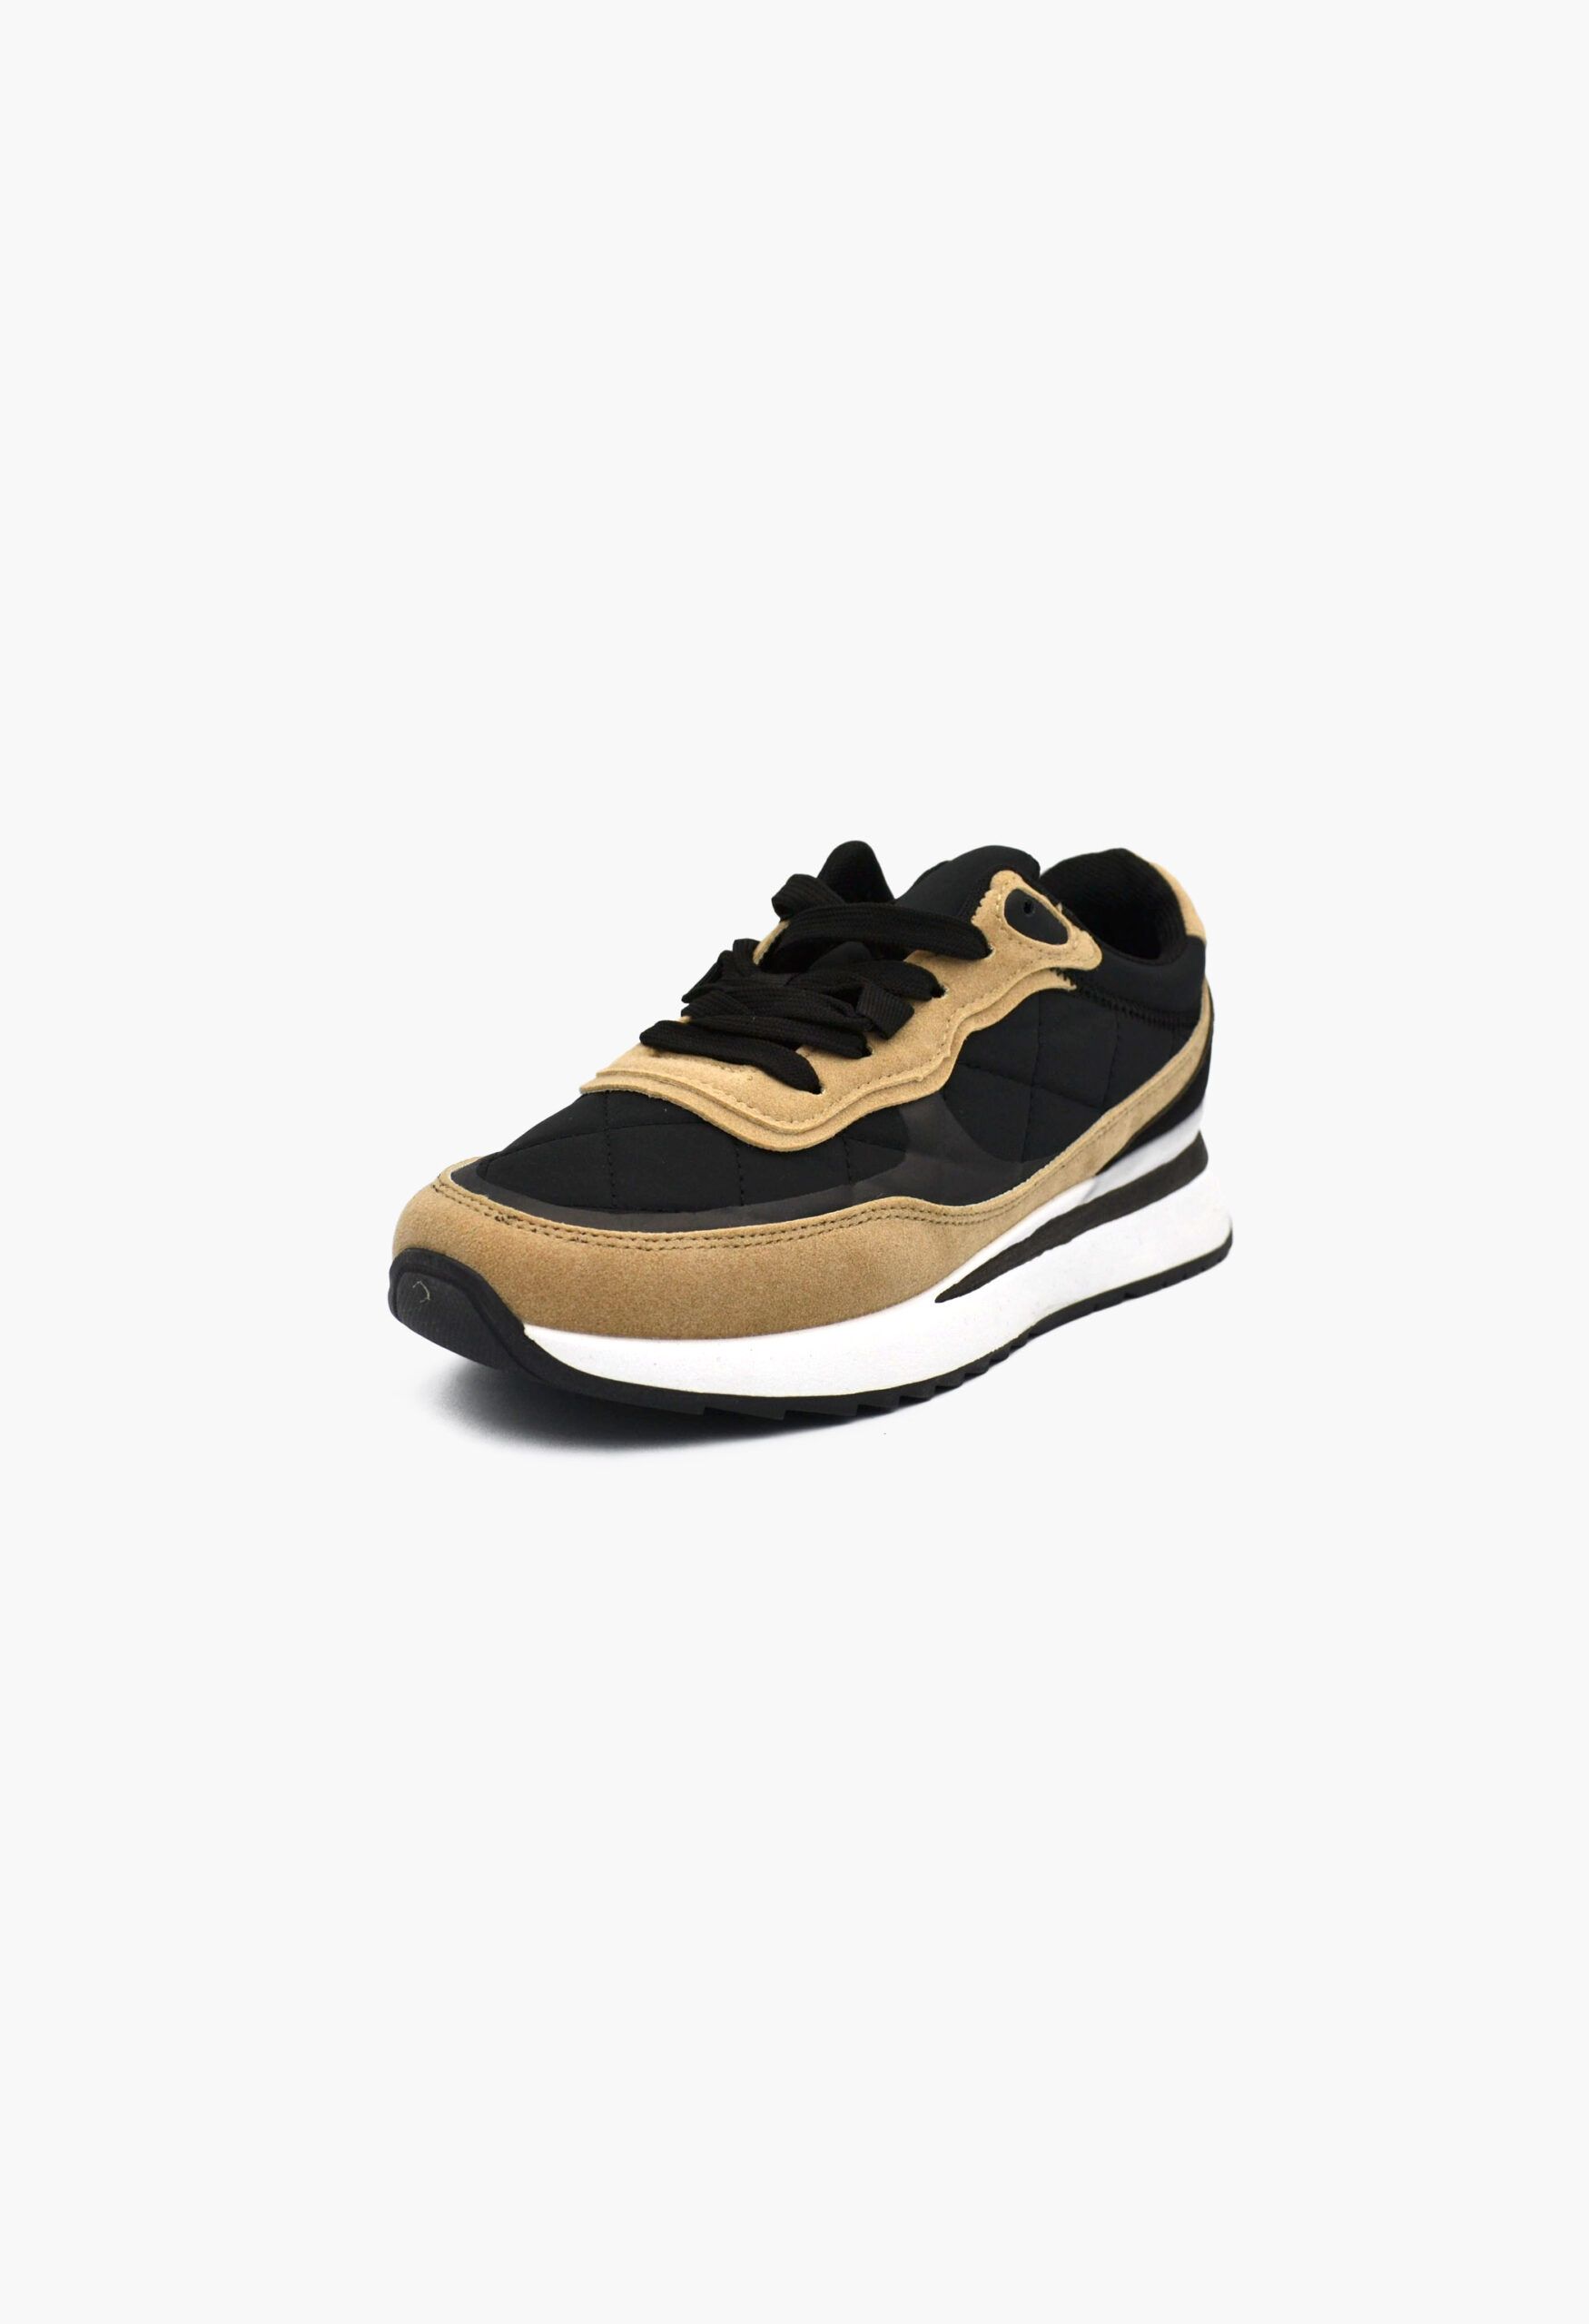 Γυναικεία Sneakers ΜΕ ΠΛΑΤΦΟΡΜΑ μαύρο / W12-YD4261-1-black Χαμηλά Παπούτσια joya.gr